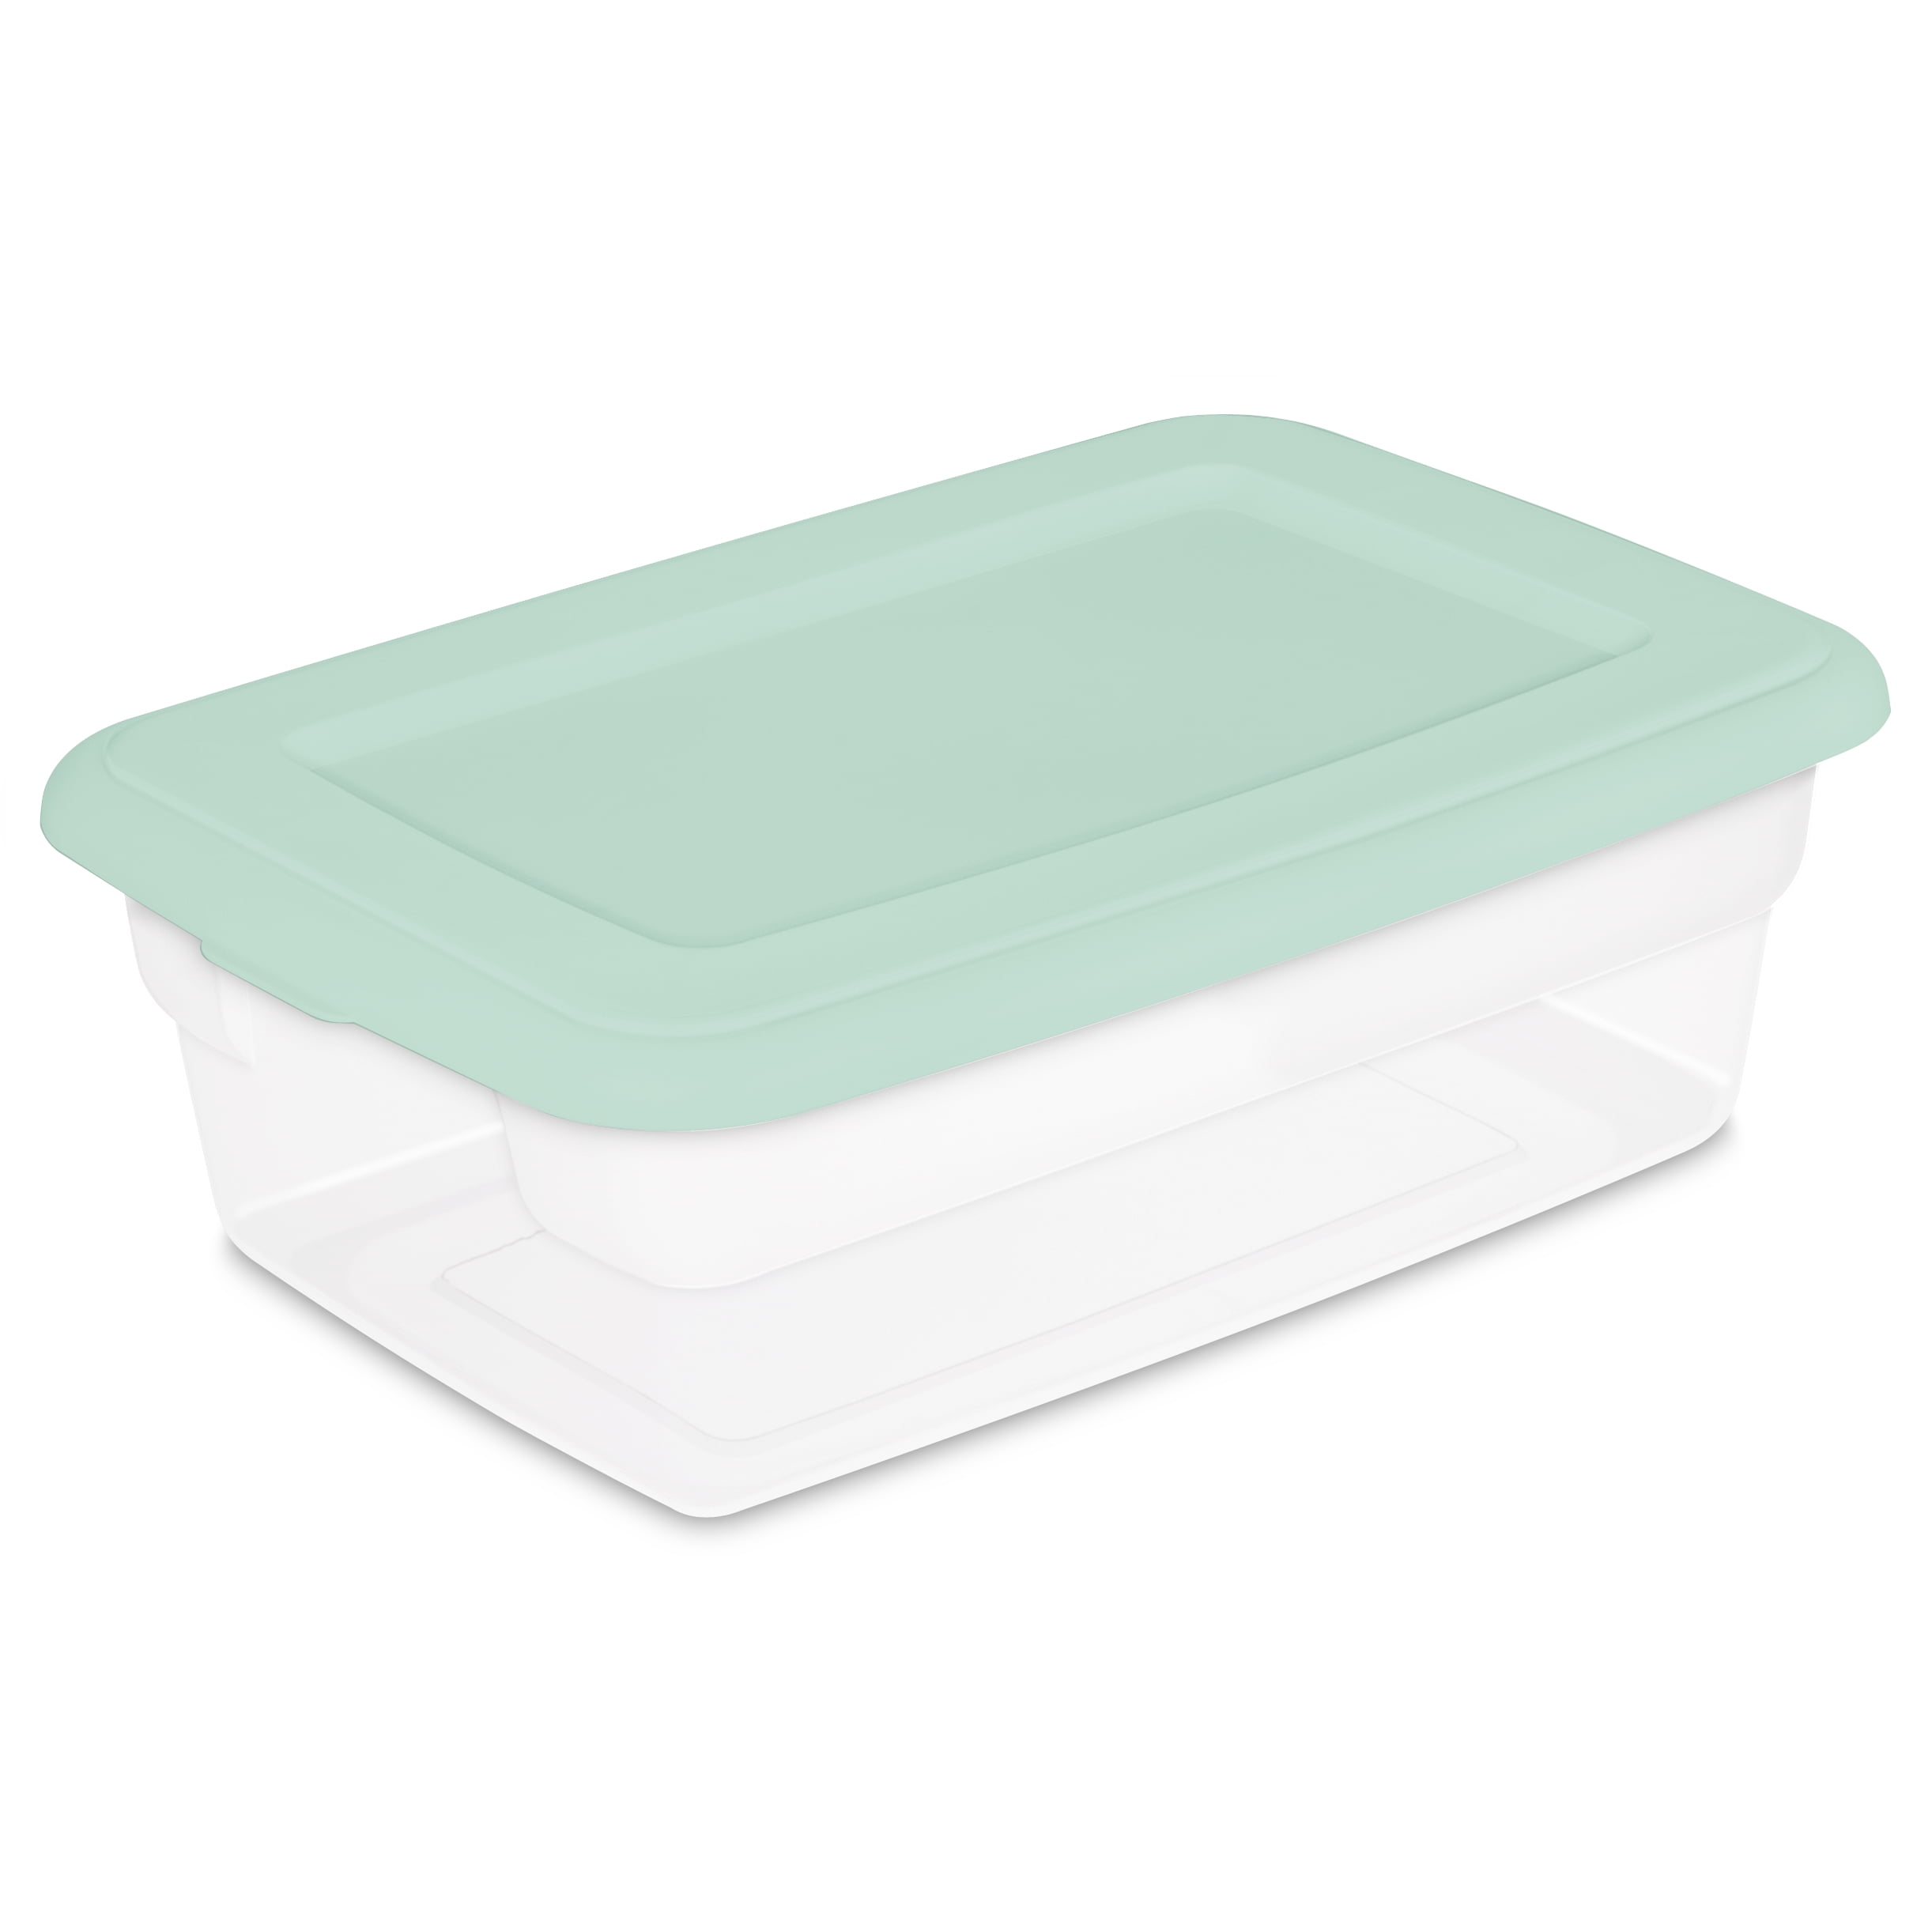 Sterilite 3 Gallon Plastic Storage Box, Clear and Green, 4 Count